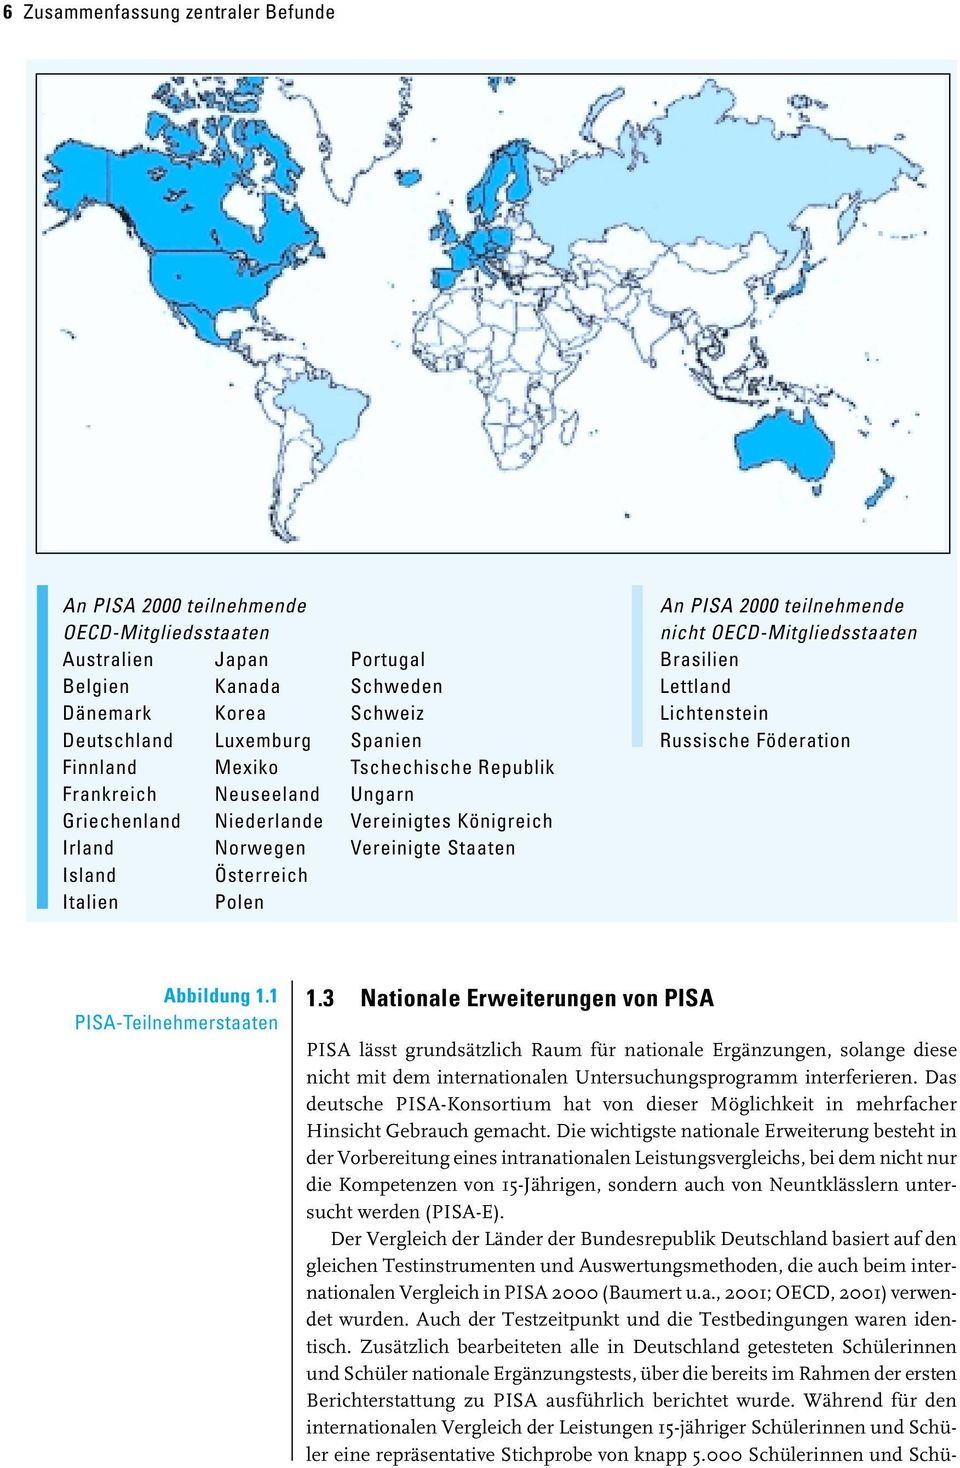 teilnehmende nicht OECD-Mitgliedsstaaten Brasilien Lettland Lichtenstein Russische Föderation Abbildung 1.1 PISA-Teilnehmerstaaten 1.